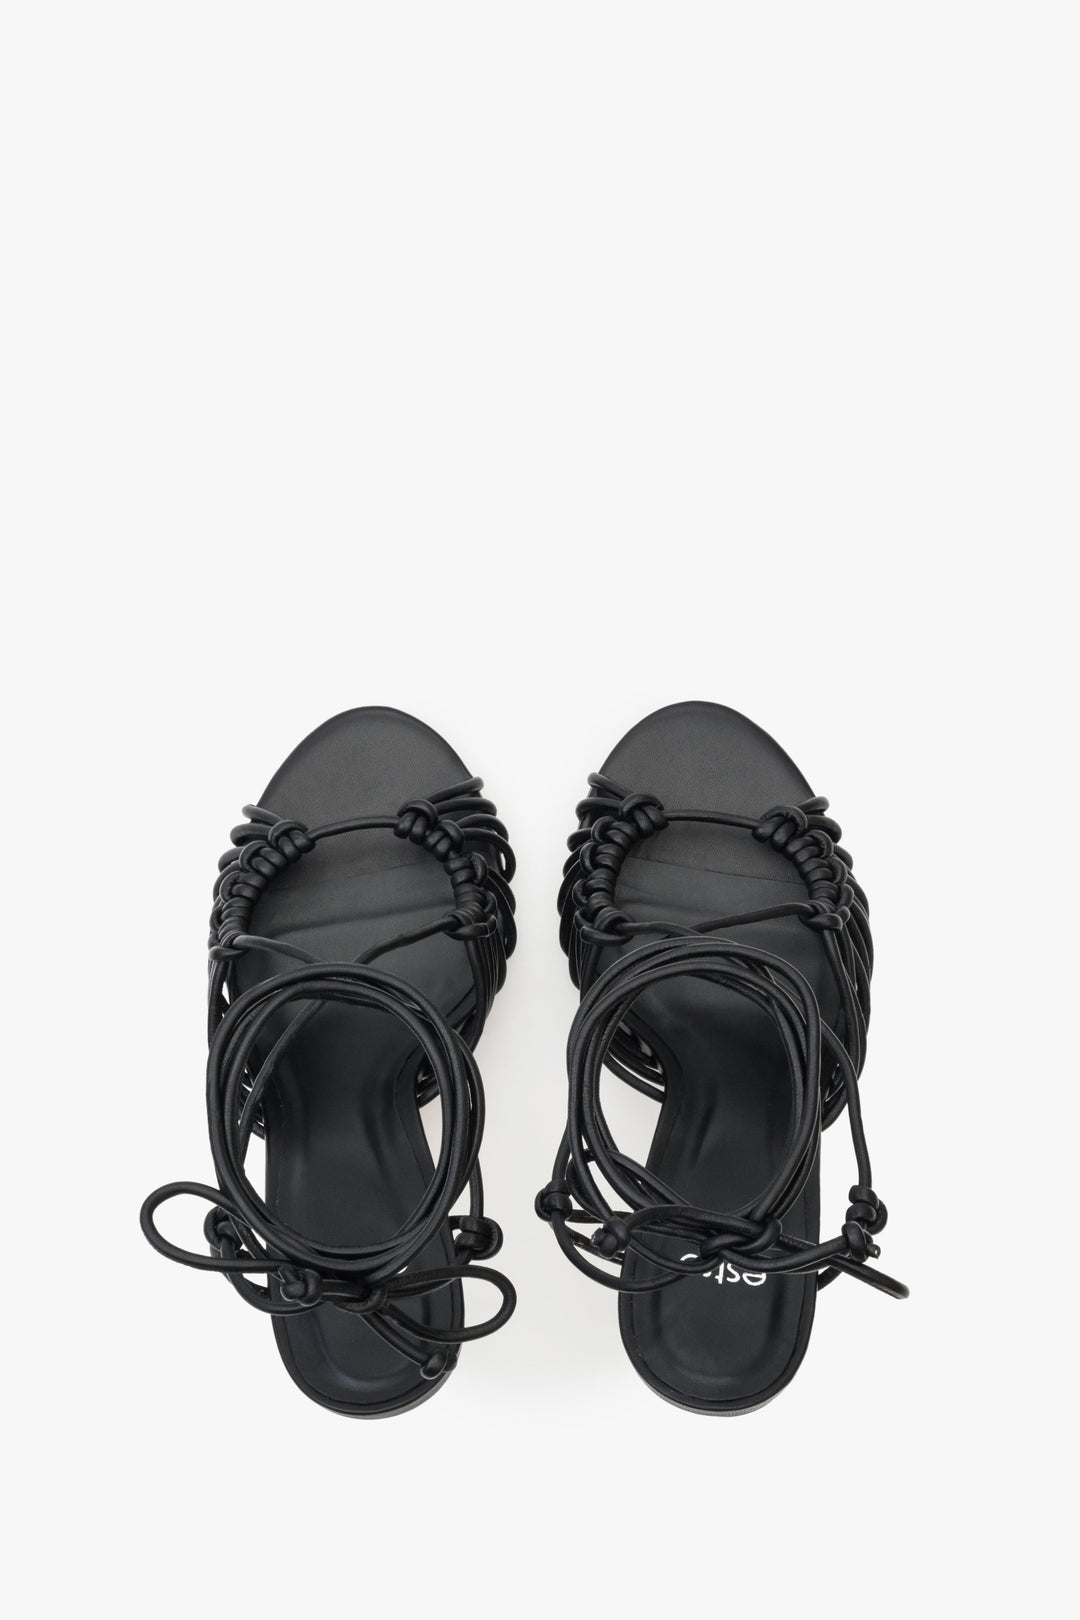 Damskie, skórzane sandały z wiązaniem w kolorze czarnym Estro - prezentacja modelu z góry.